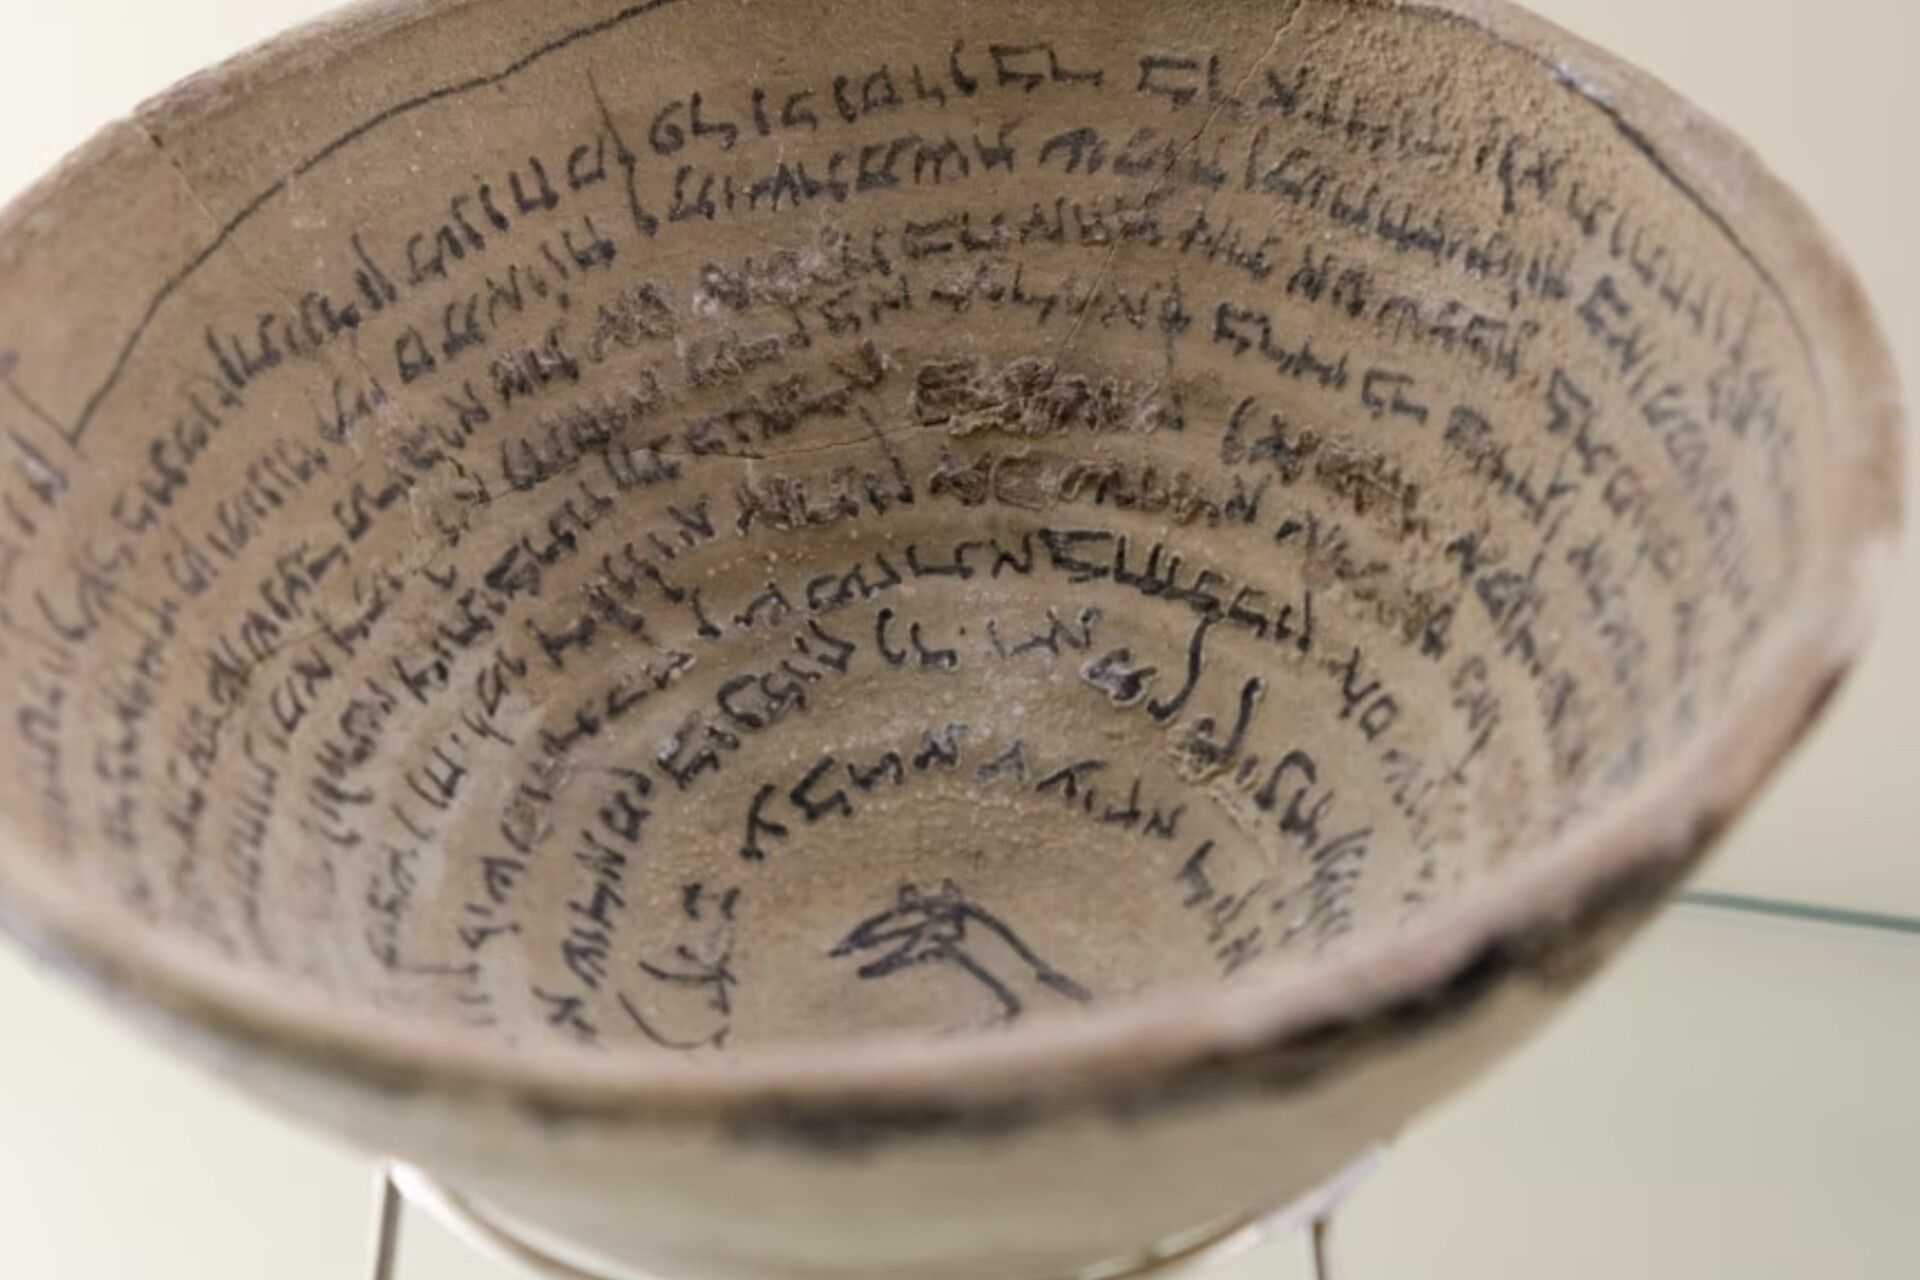 Cuneiforme: Uma representação da escrita cuneiforme em um vaso acadiano